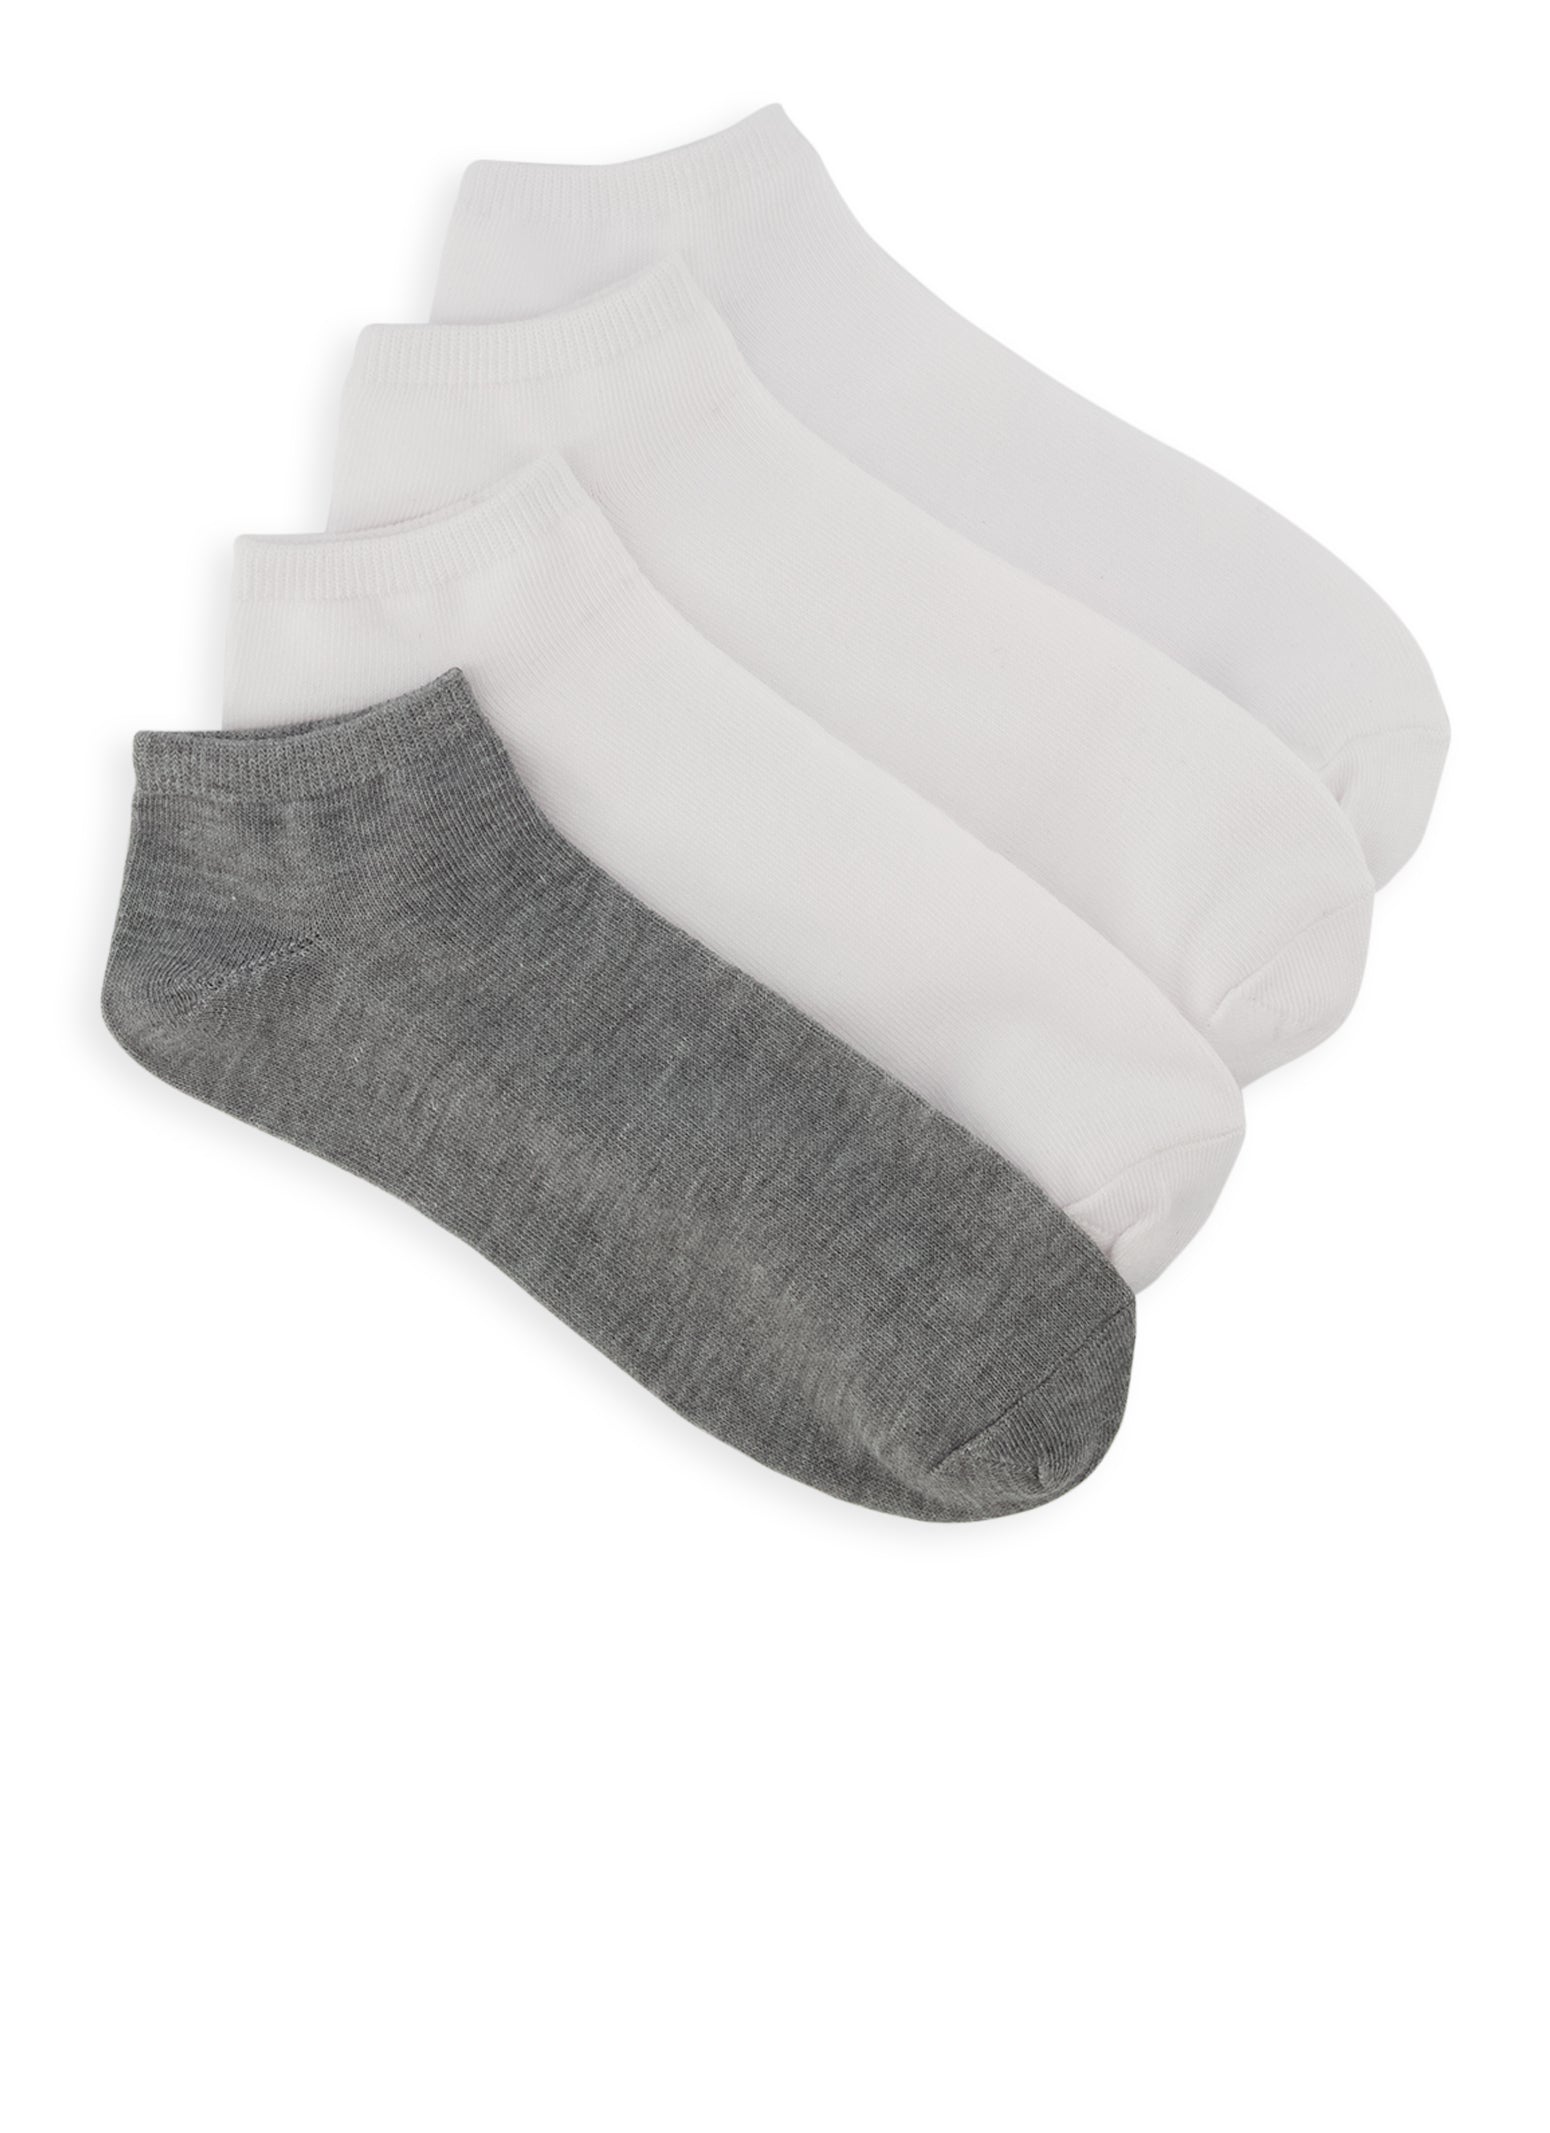 4 Pack White Ankle Socks Size 10-13